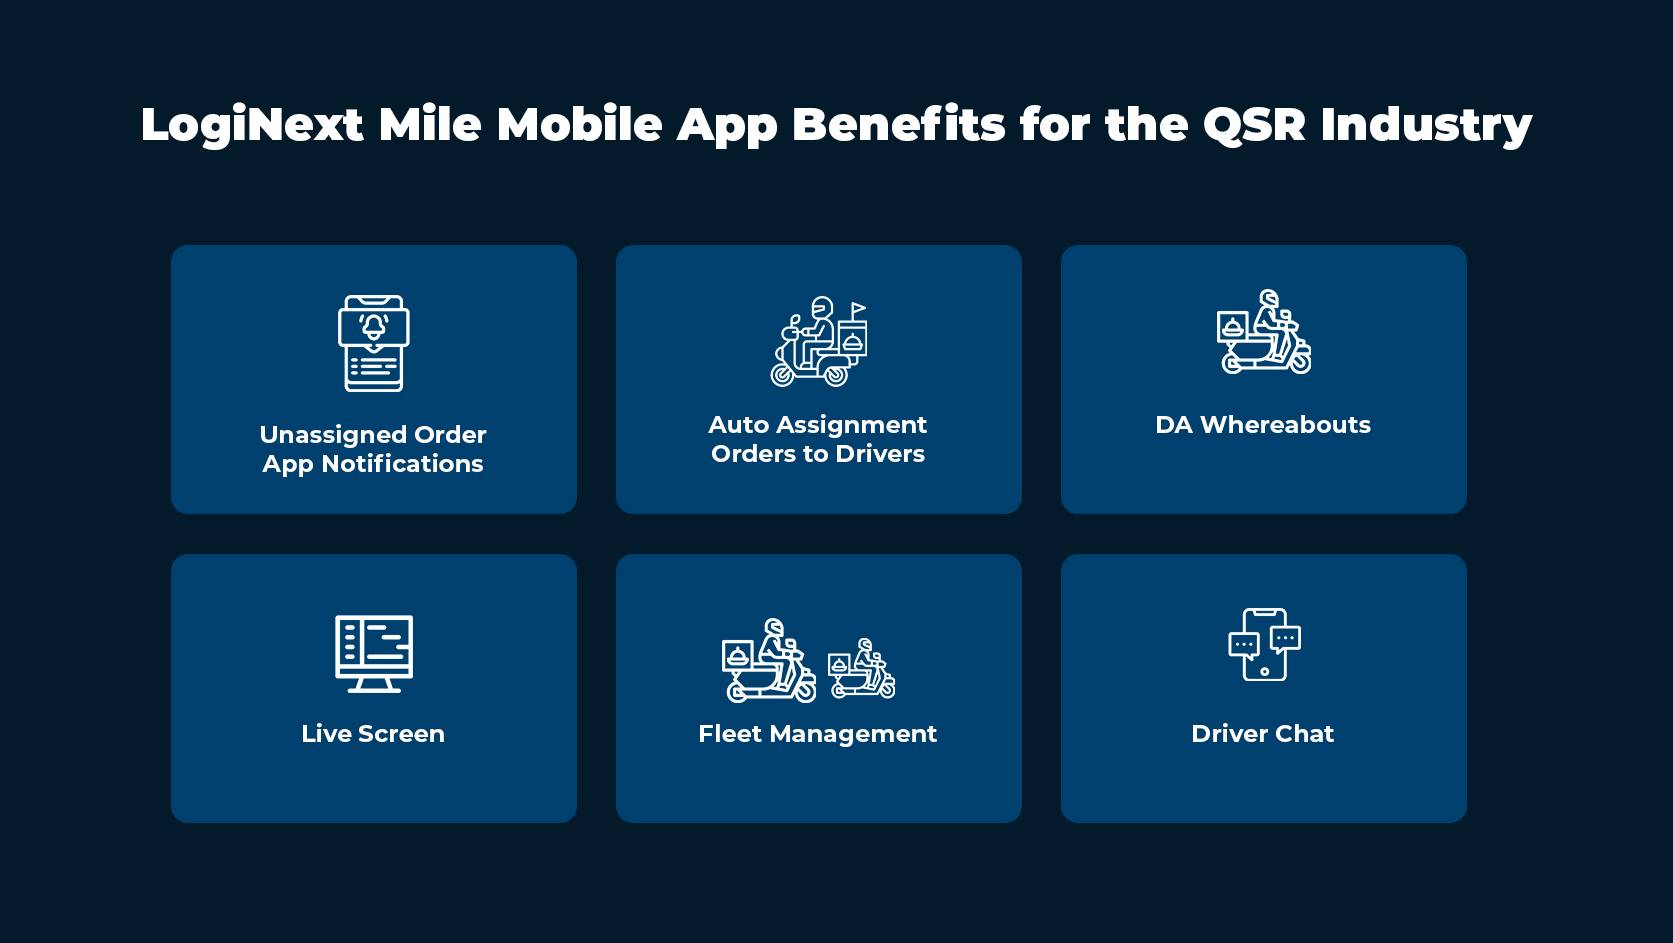 مزایای برنامه موبایل LogiNext Mile برای مشاغل QSR